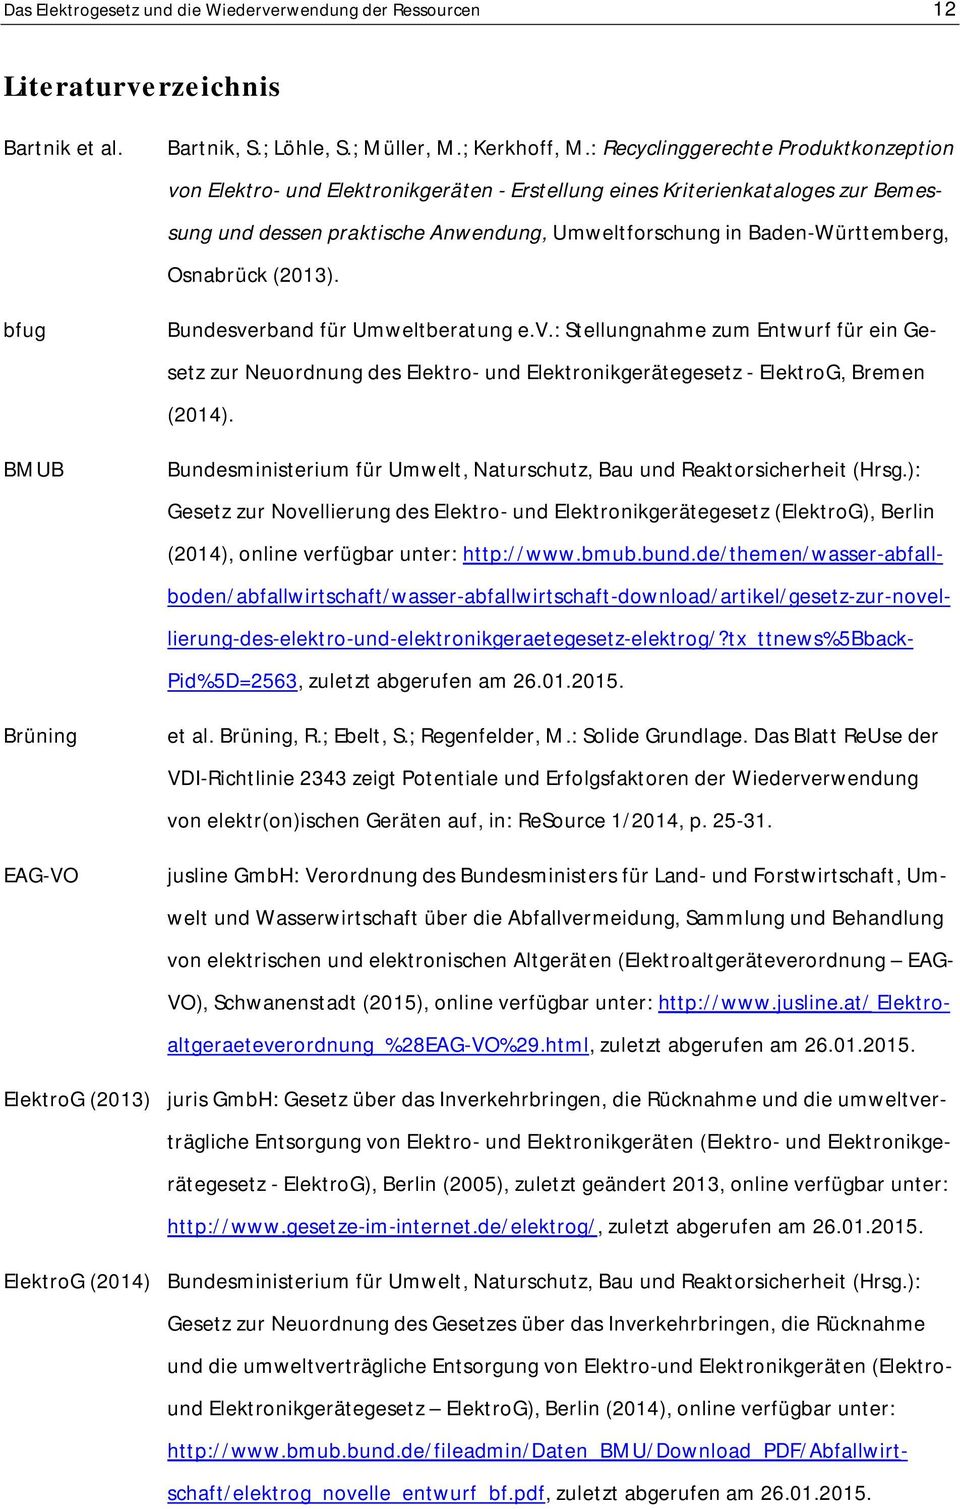 Osnabrück (2013). Bundesverband für Umweltberatung e.v.: Stellungnahme zum Entwurf für ein Gesetz zur Neuordnung des Elektro- und Elektronikgerätegesetz - ElektroG, Bremen (2014).